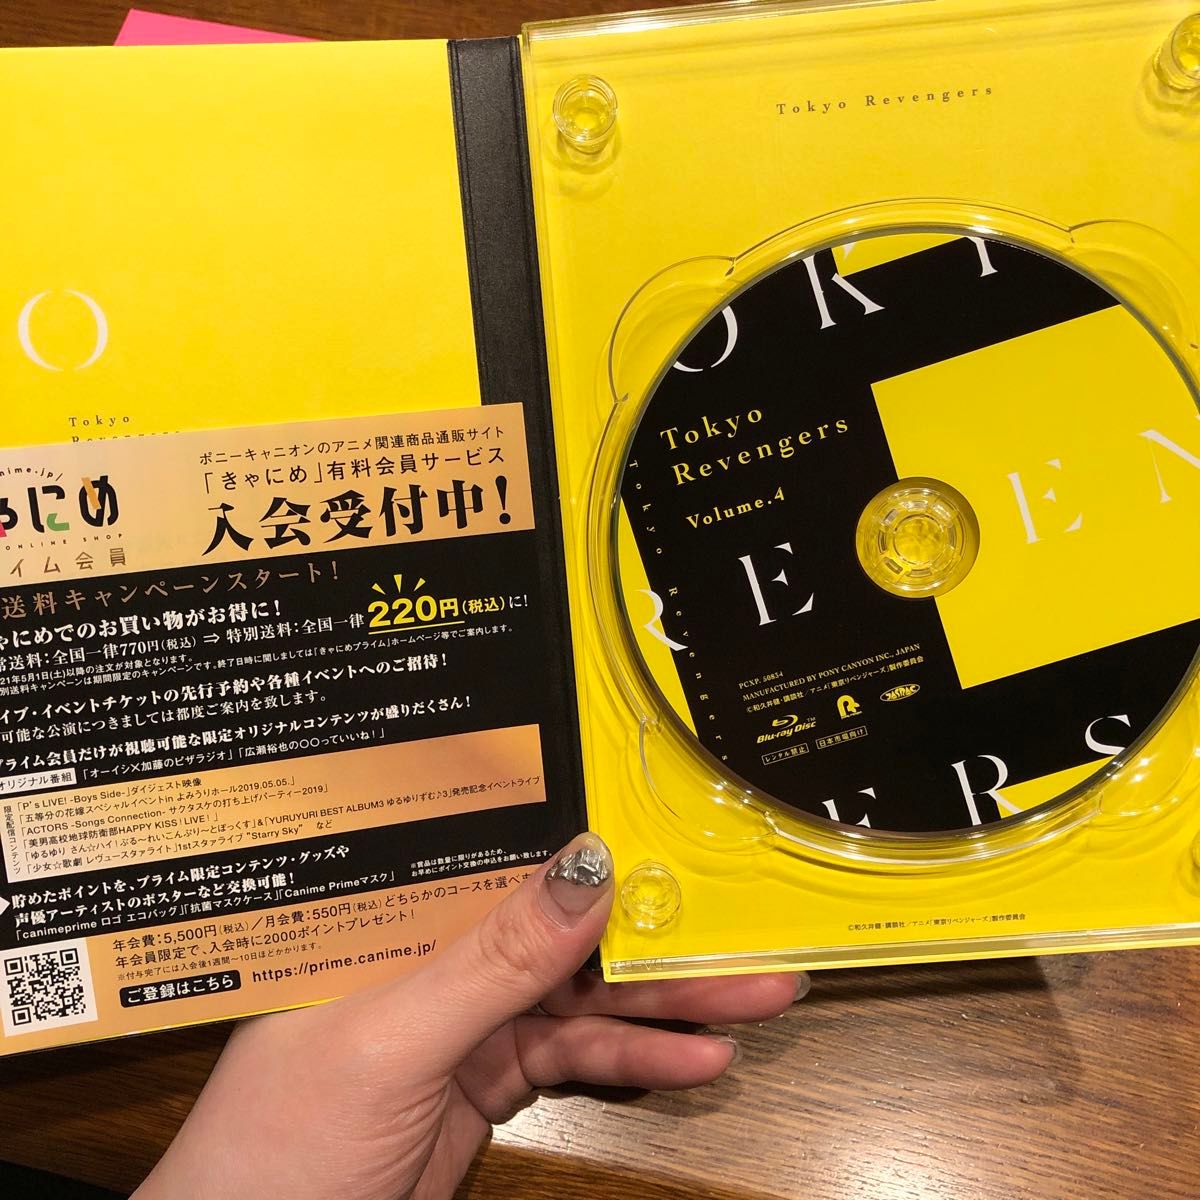 【特典なし】東京リベンジャーズ 東リべ DVD 3.4.5セット